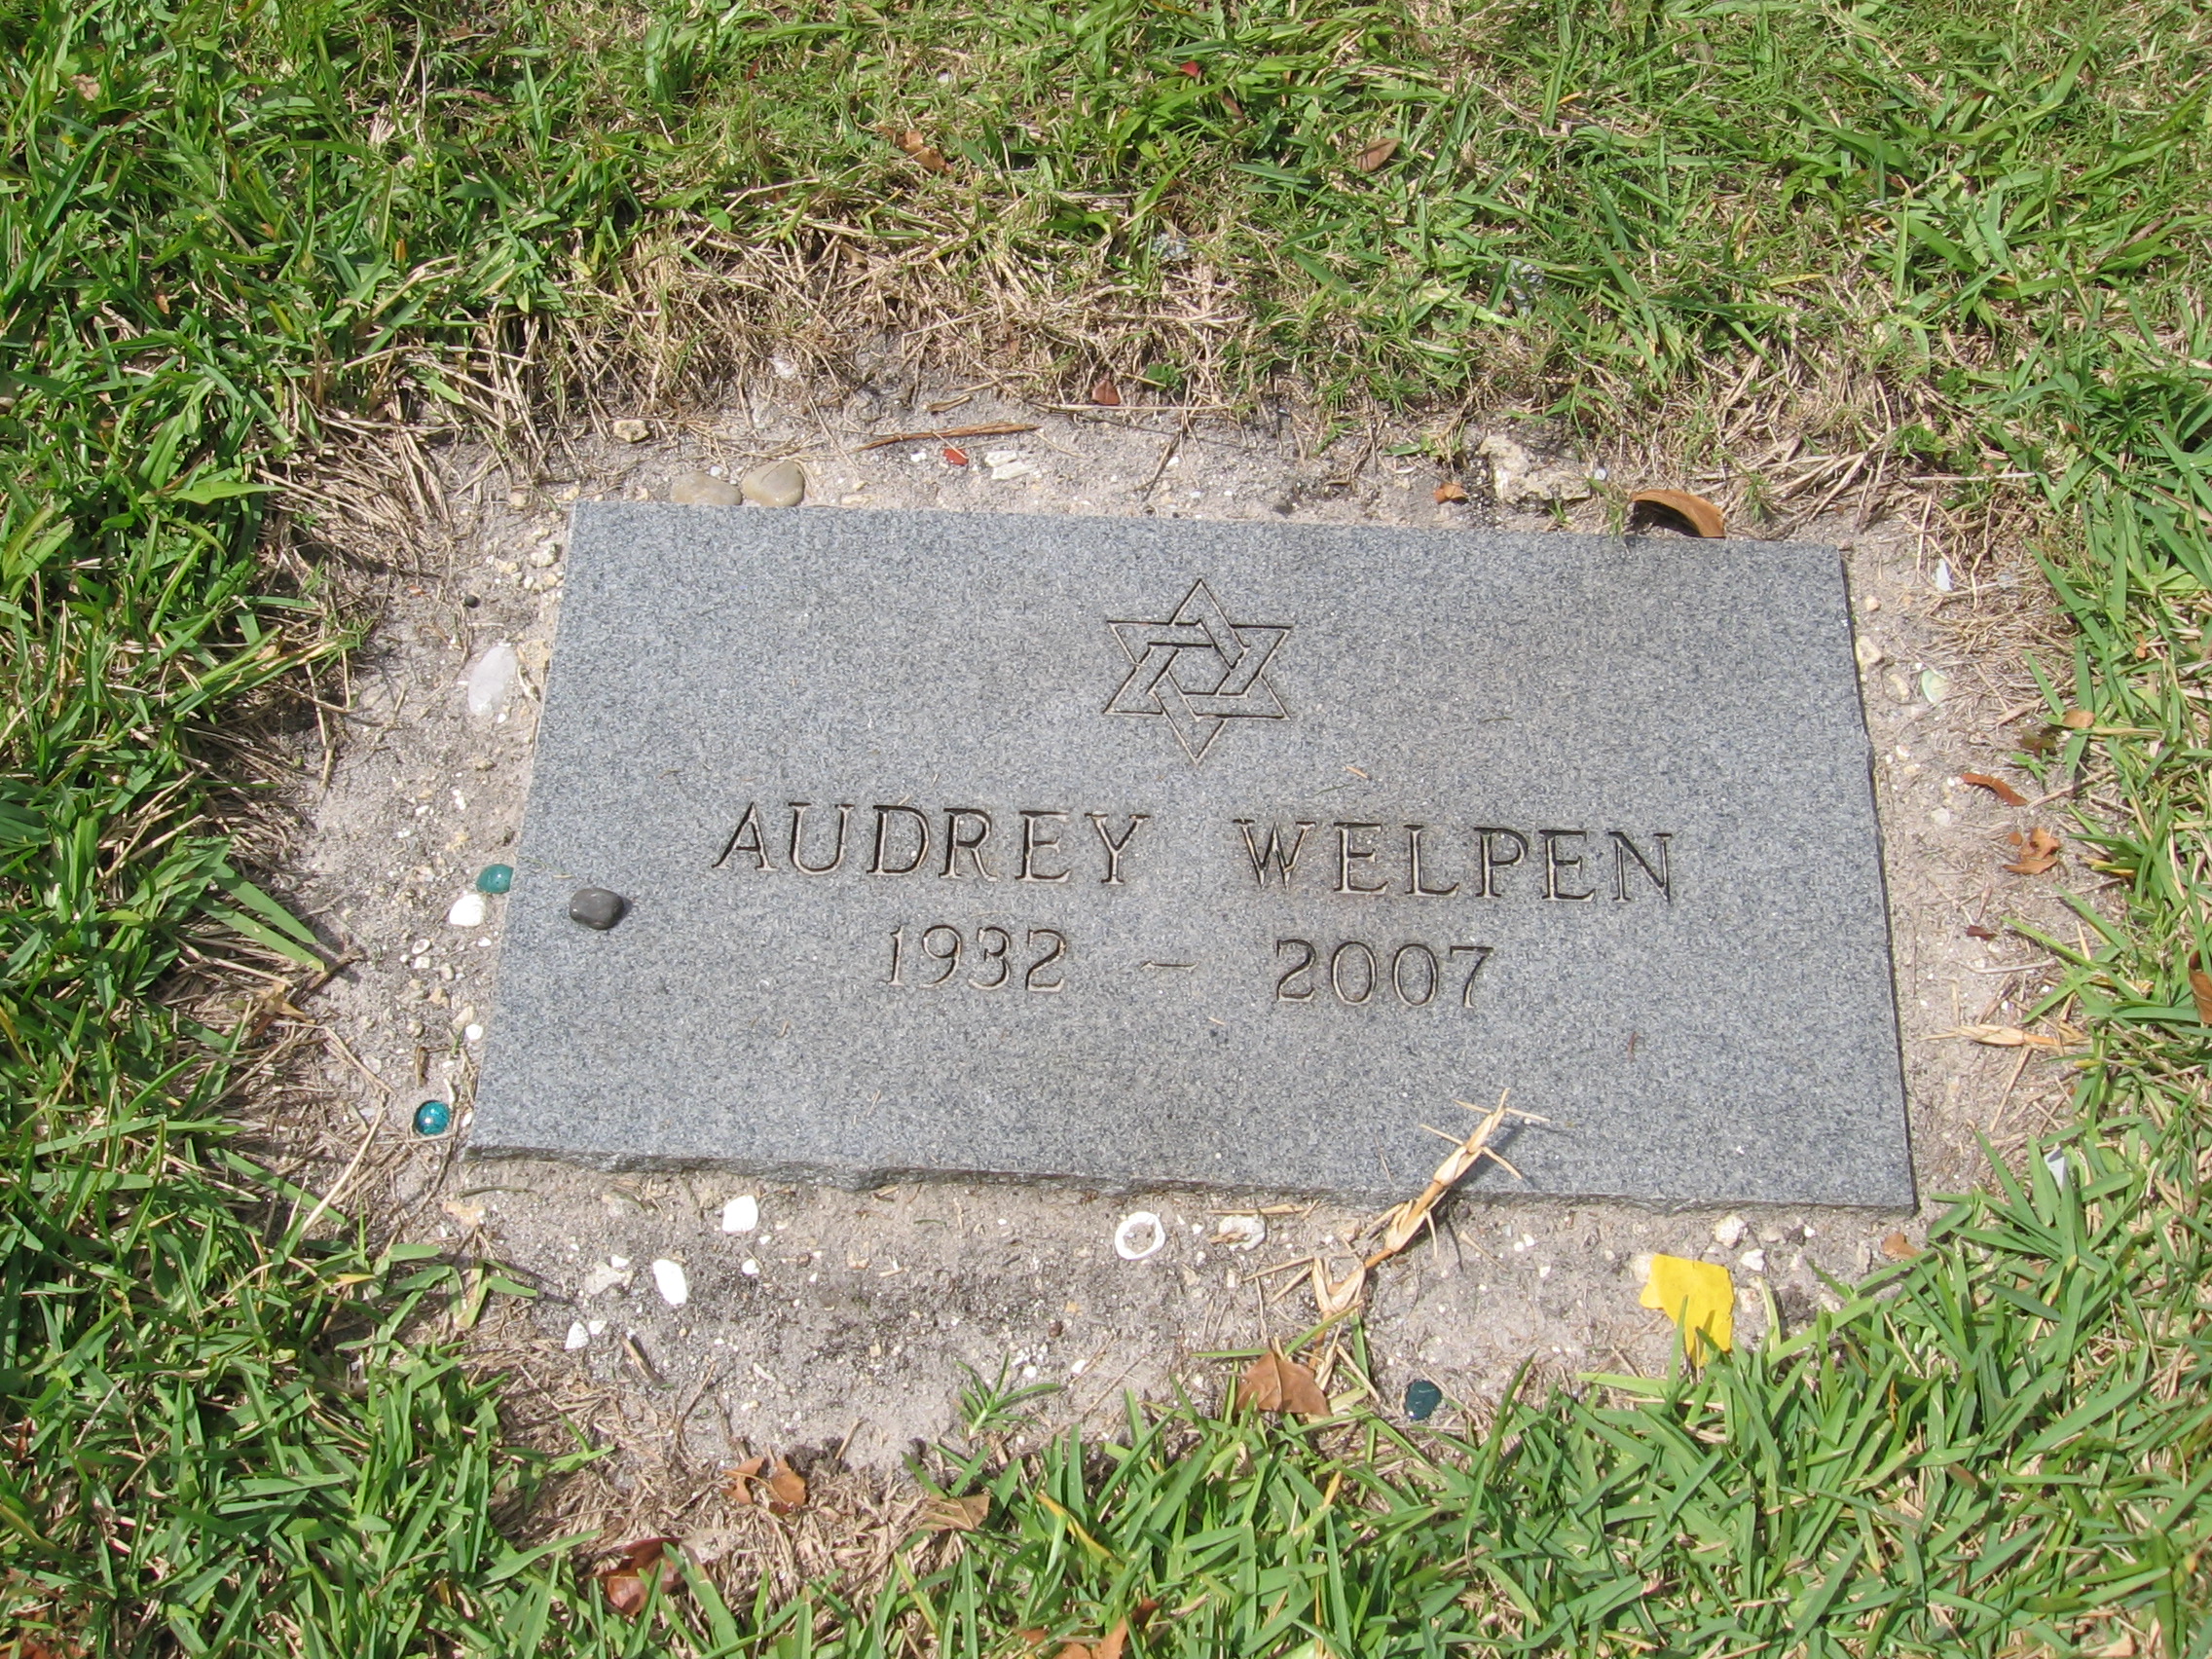 Audrey Welpen